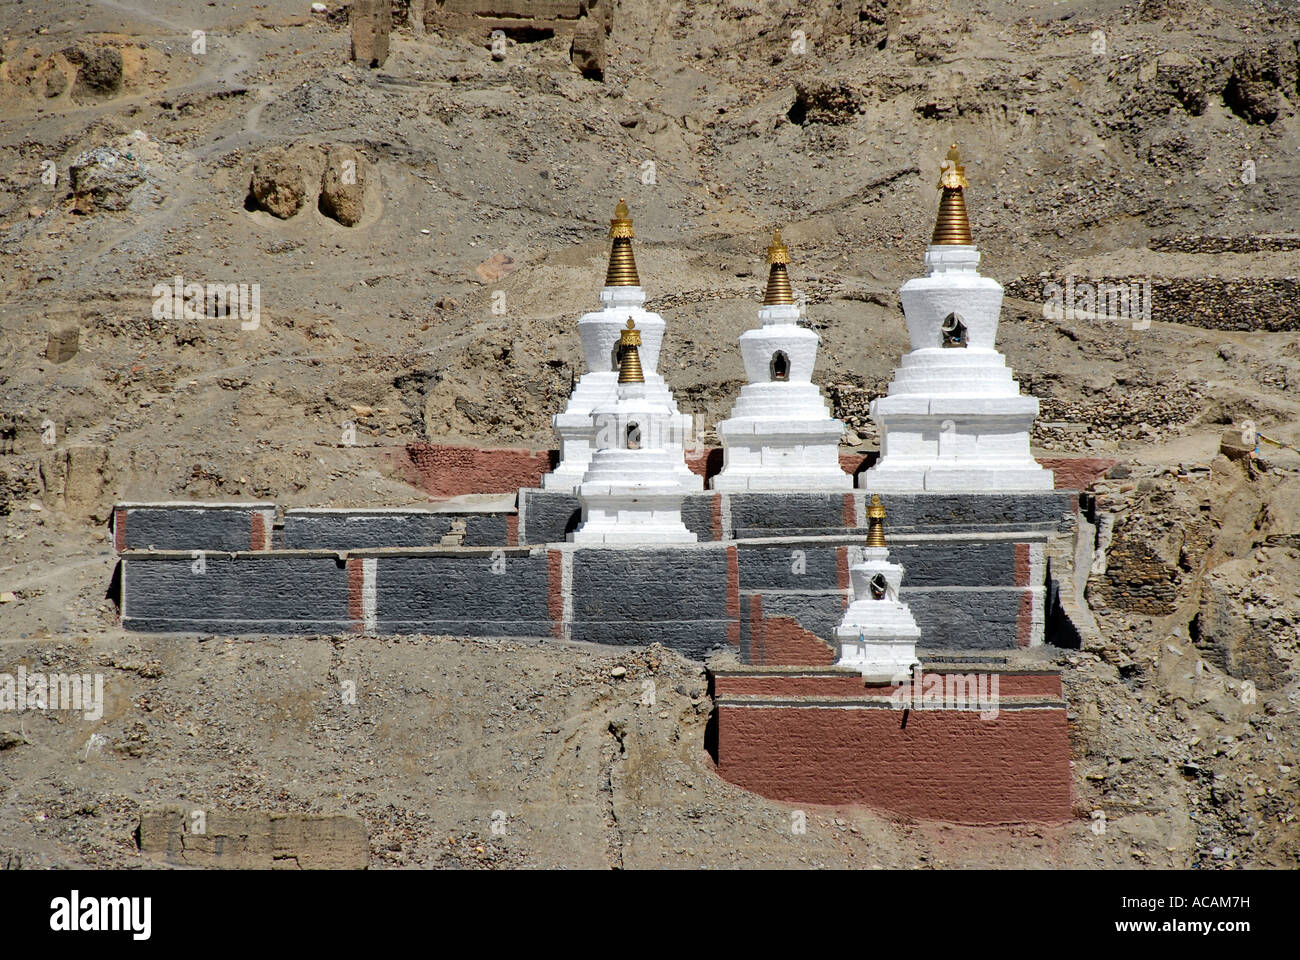 Le bouddhisme tibétain stupas blancs et gris avec des murs peints en rouge sombre Monastère Sakya Tibet Chine Banque D'Images